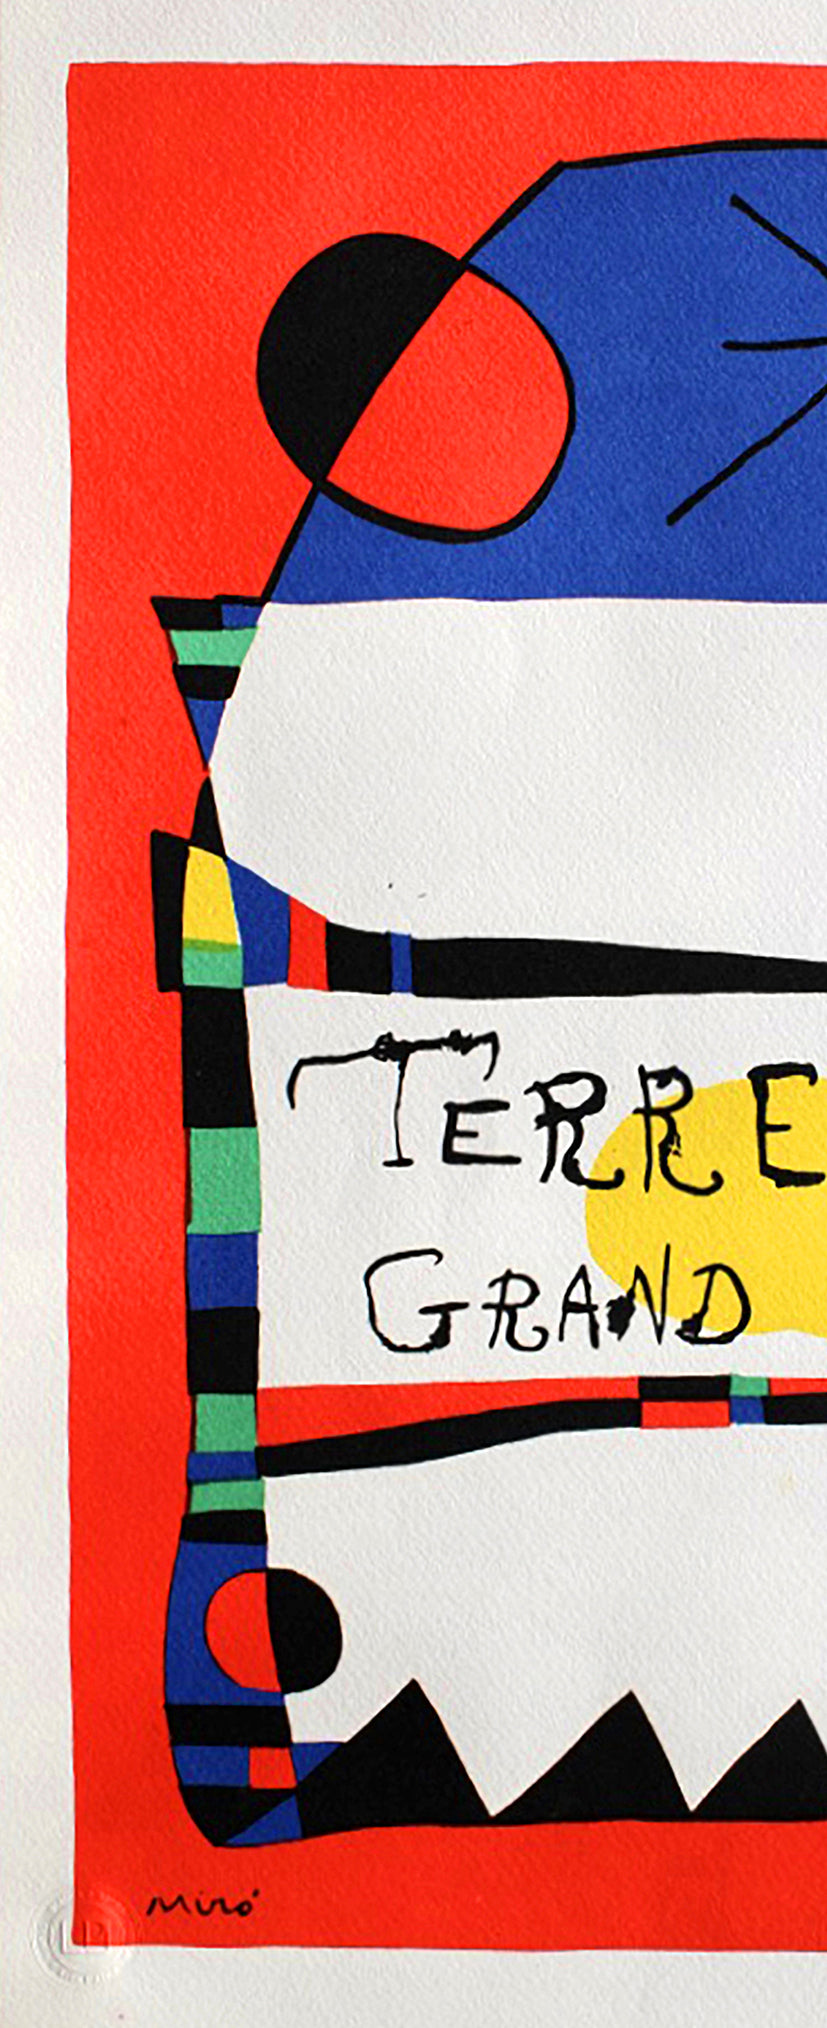 Joan Miró - Terre de feu (1979)